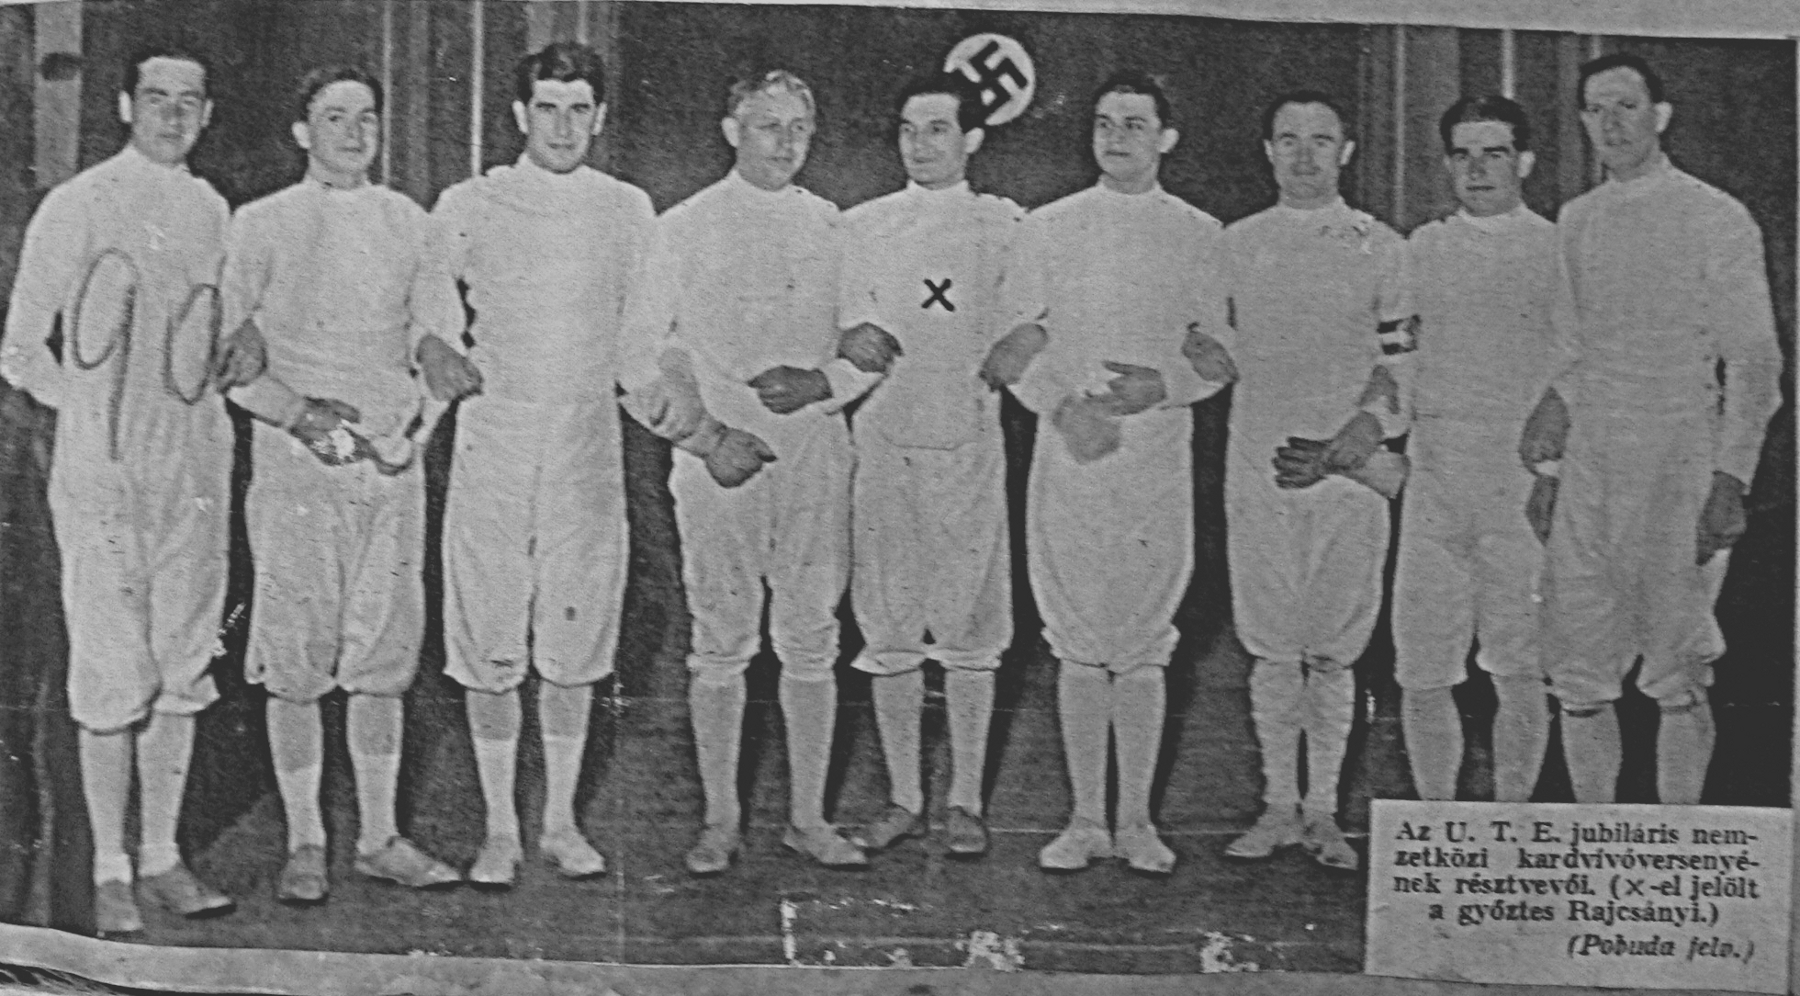 kabos-balrol-a-harmadik-az-ute-1935-os-jubileumi-nemzetkozi-kardversenyen-a-klub-fennallasanak-50-eveben